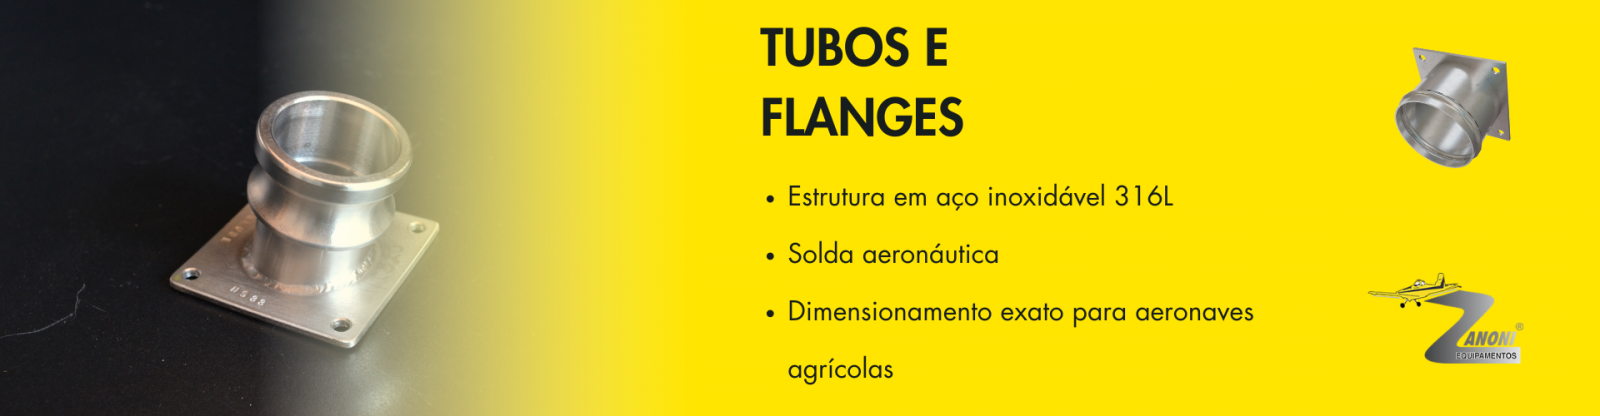 TUBOS E FLANGES